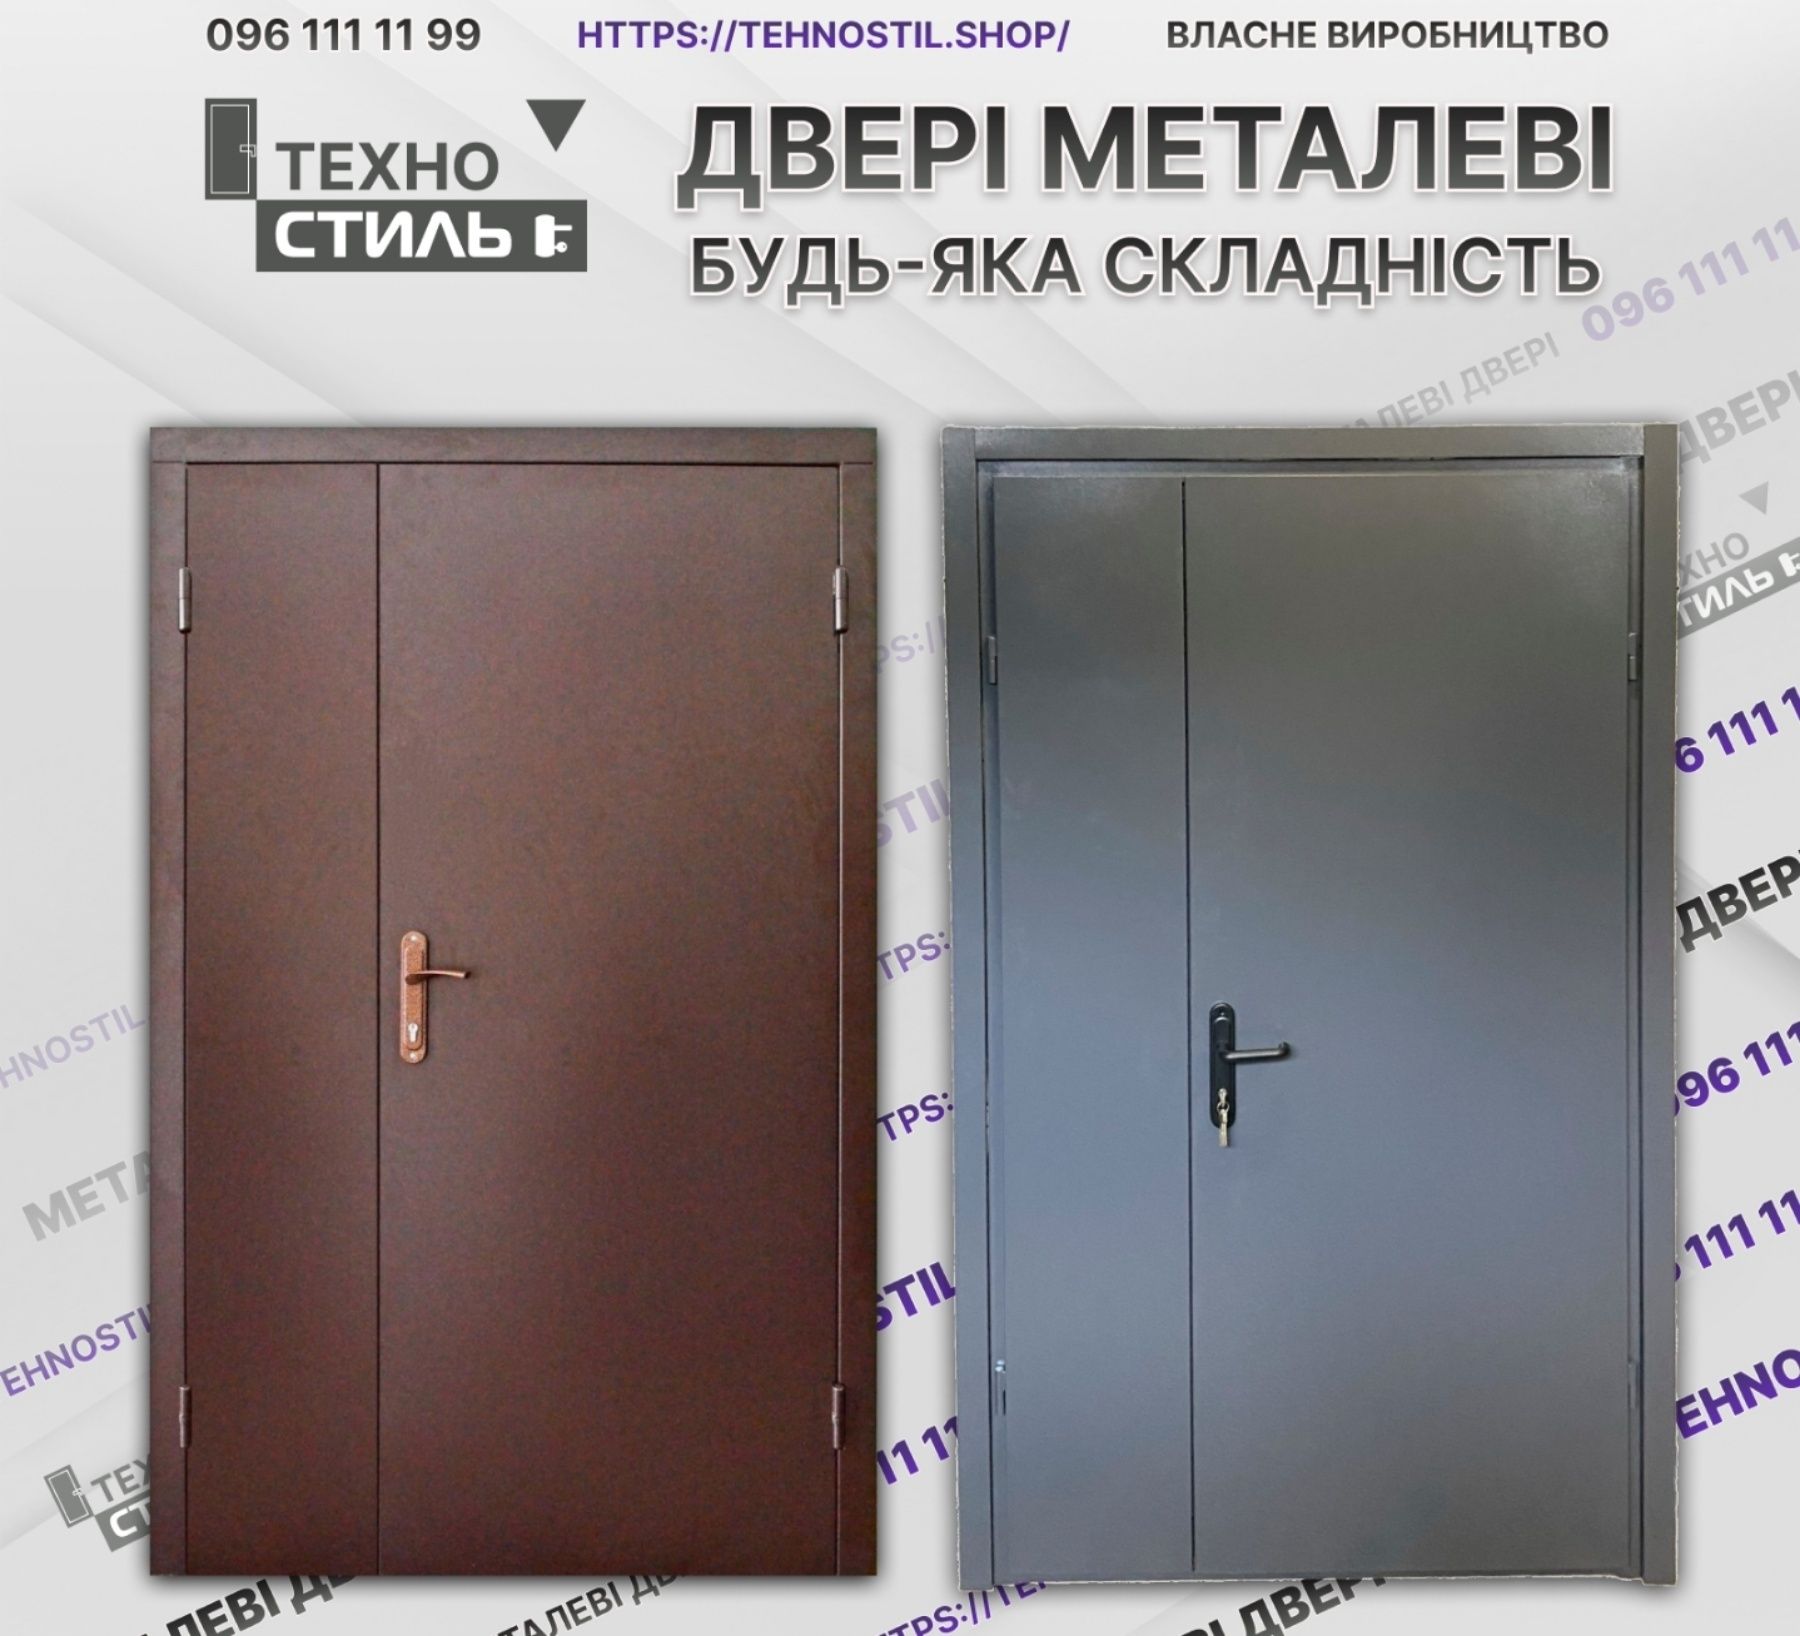 Металлические двери Входные технические в хозблок. Метал+ДСП